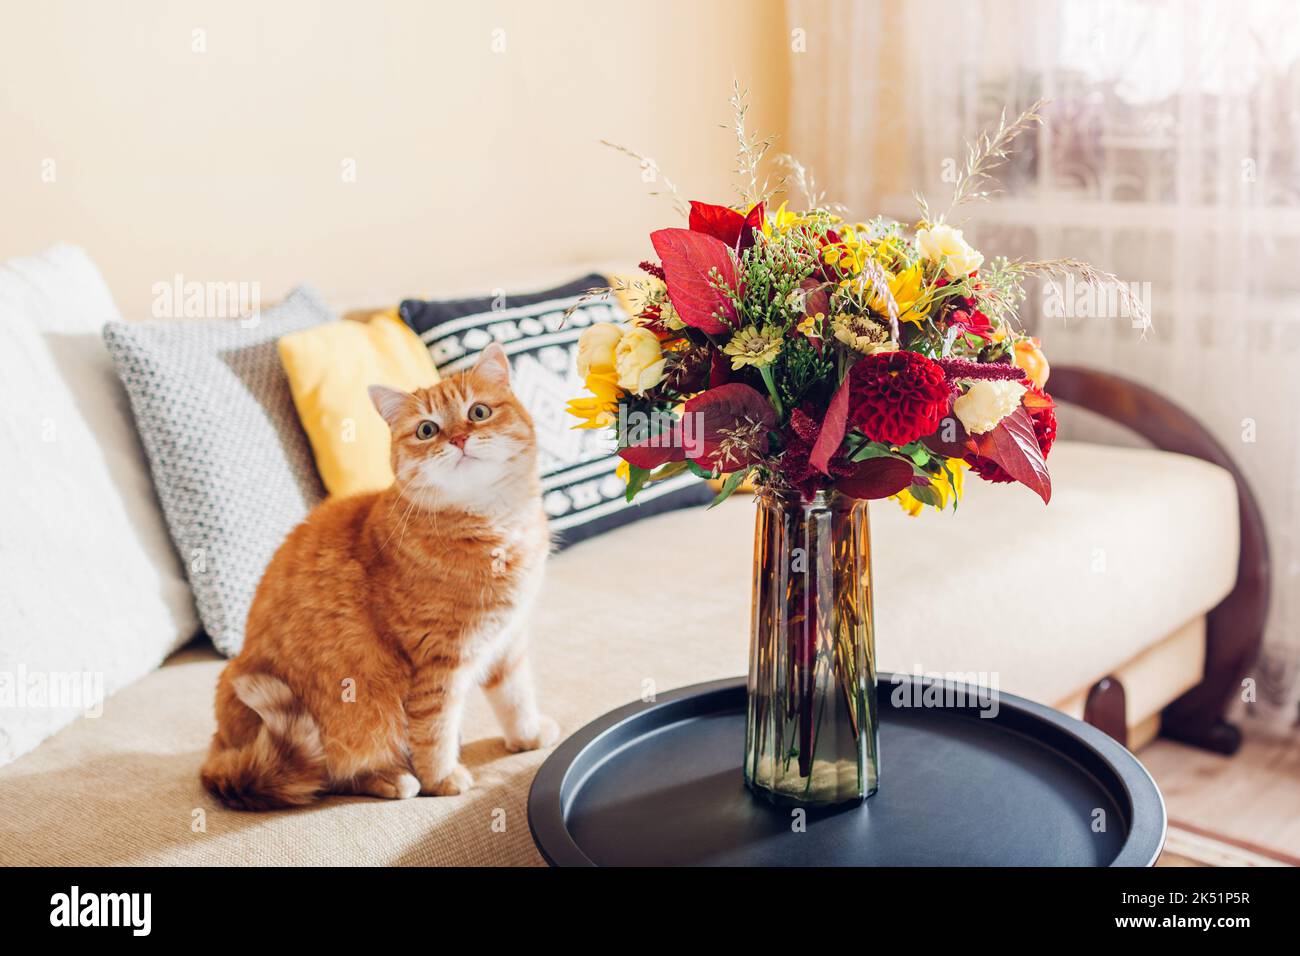 Chat de gingembre relaxant par un bouquet de fleurs d'automne mis dans un vase sur une table. Un animal drôle se sent à l'aise sur le canapé. À la maison. Banque D'Images